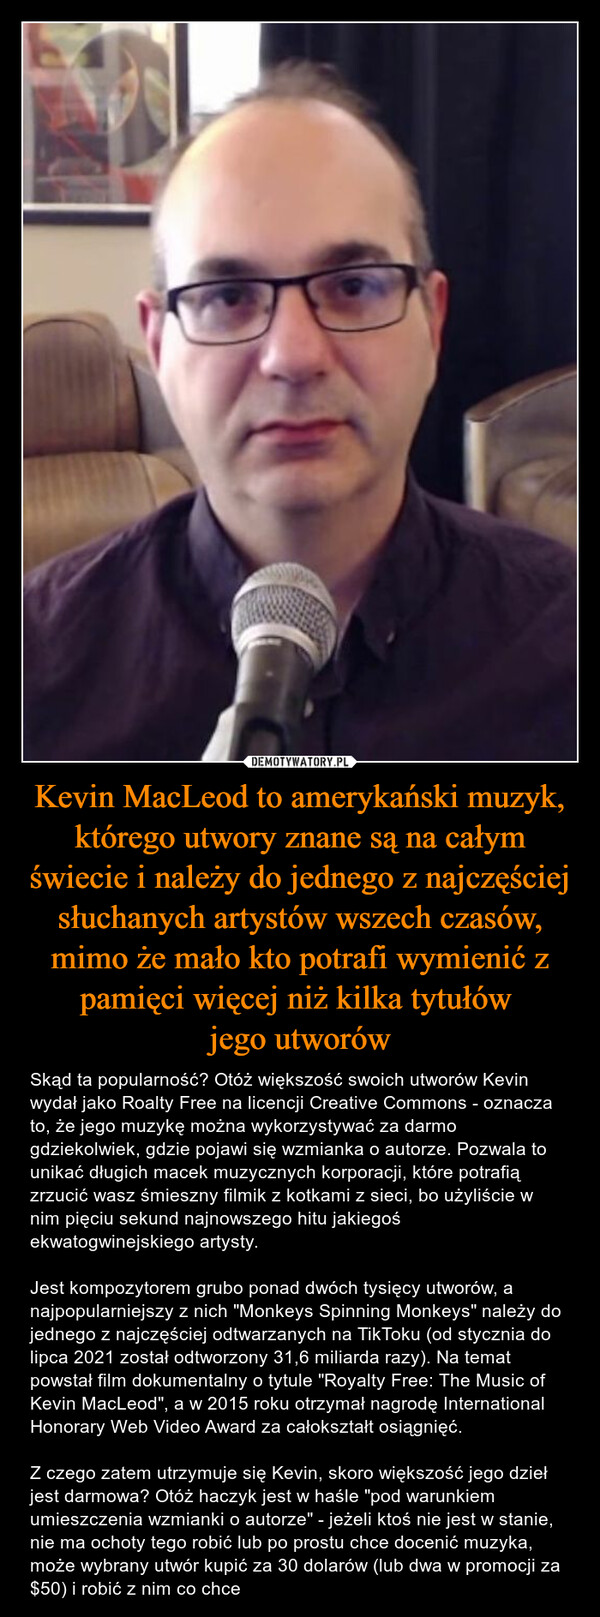 Kevin MacLeod to amerykański muzyk, którego utwory znane są na całym świecie i należy do jednego z najczęściej słuchanych artystów wszech czasów, mimo że mało kto potrafi wymienić z pamięci więcej niż kilka tytułów 
jego utworów